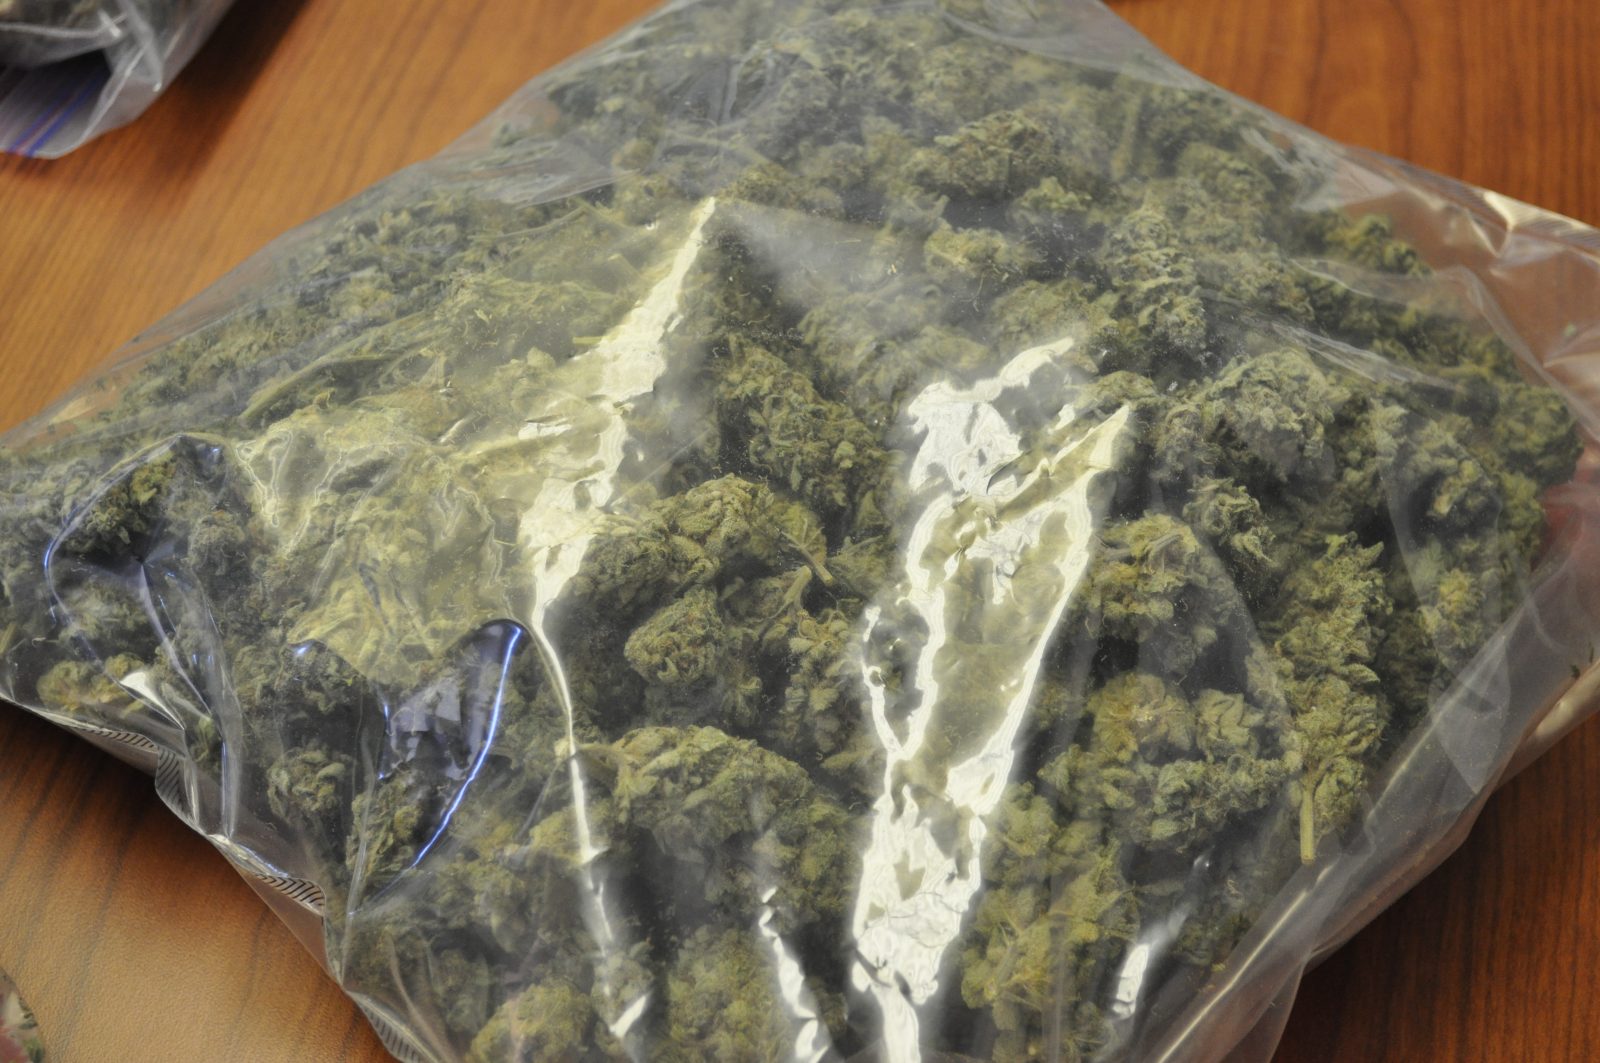     Une voyageuse importe en Guadeloupe 15 kilos d'herbe de cannabis 

